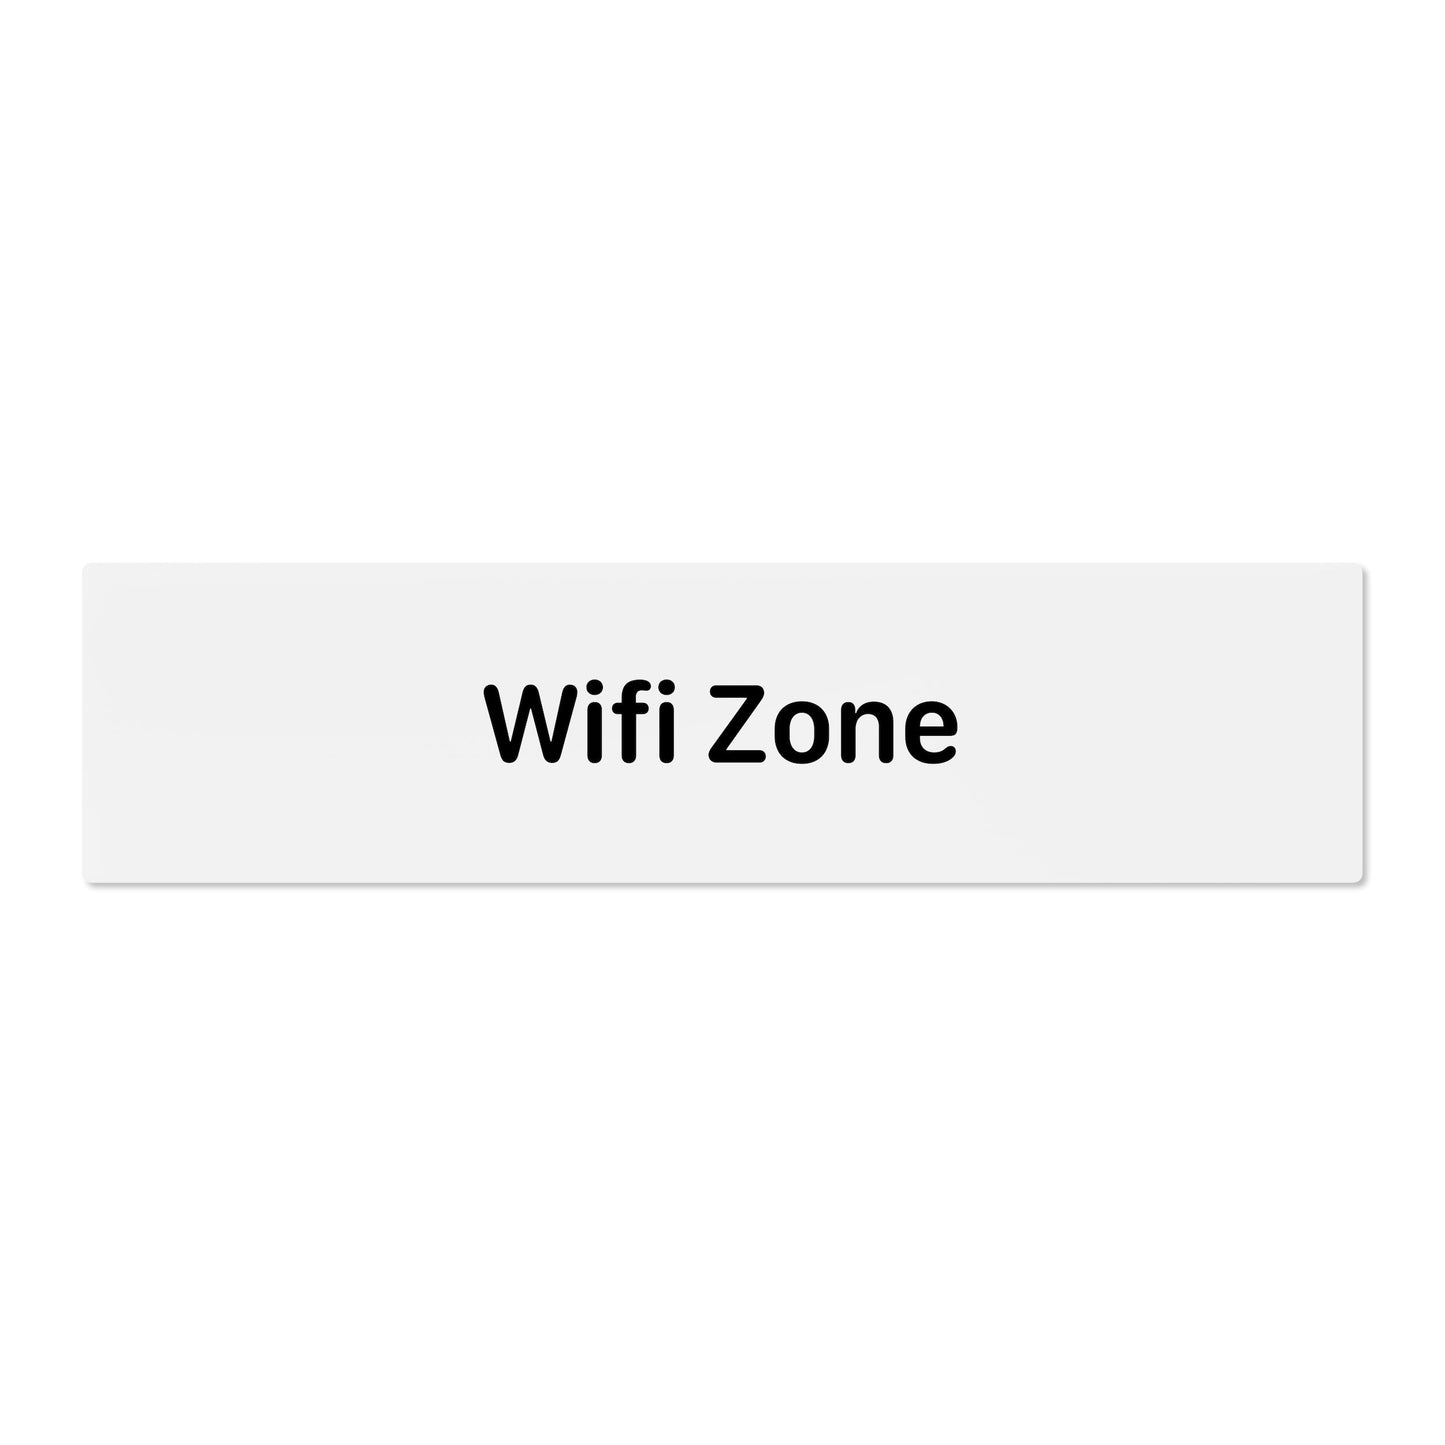 Wifi Zone